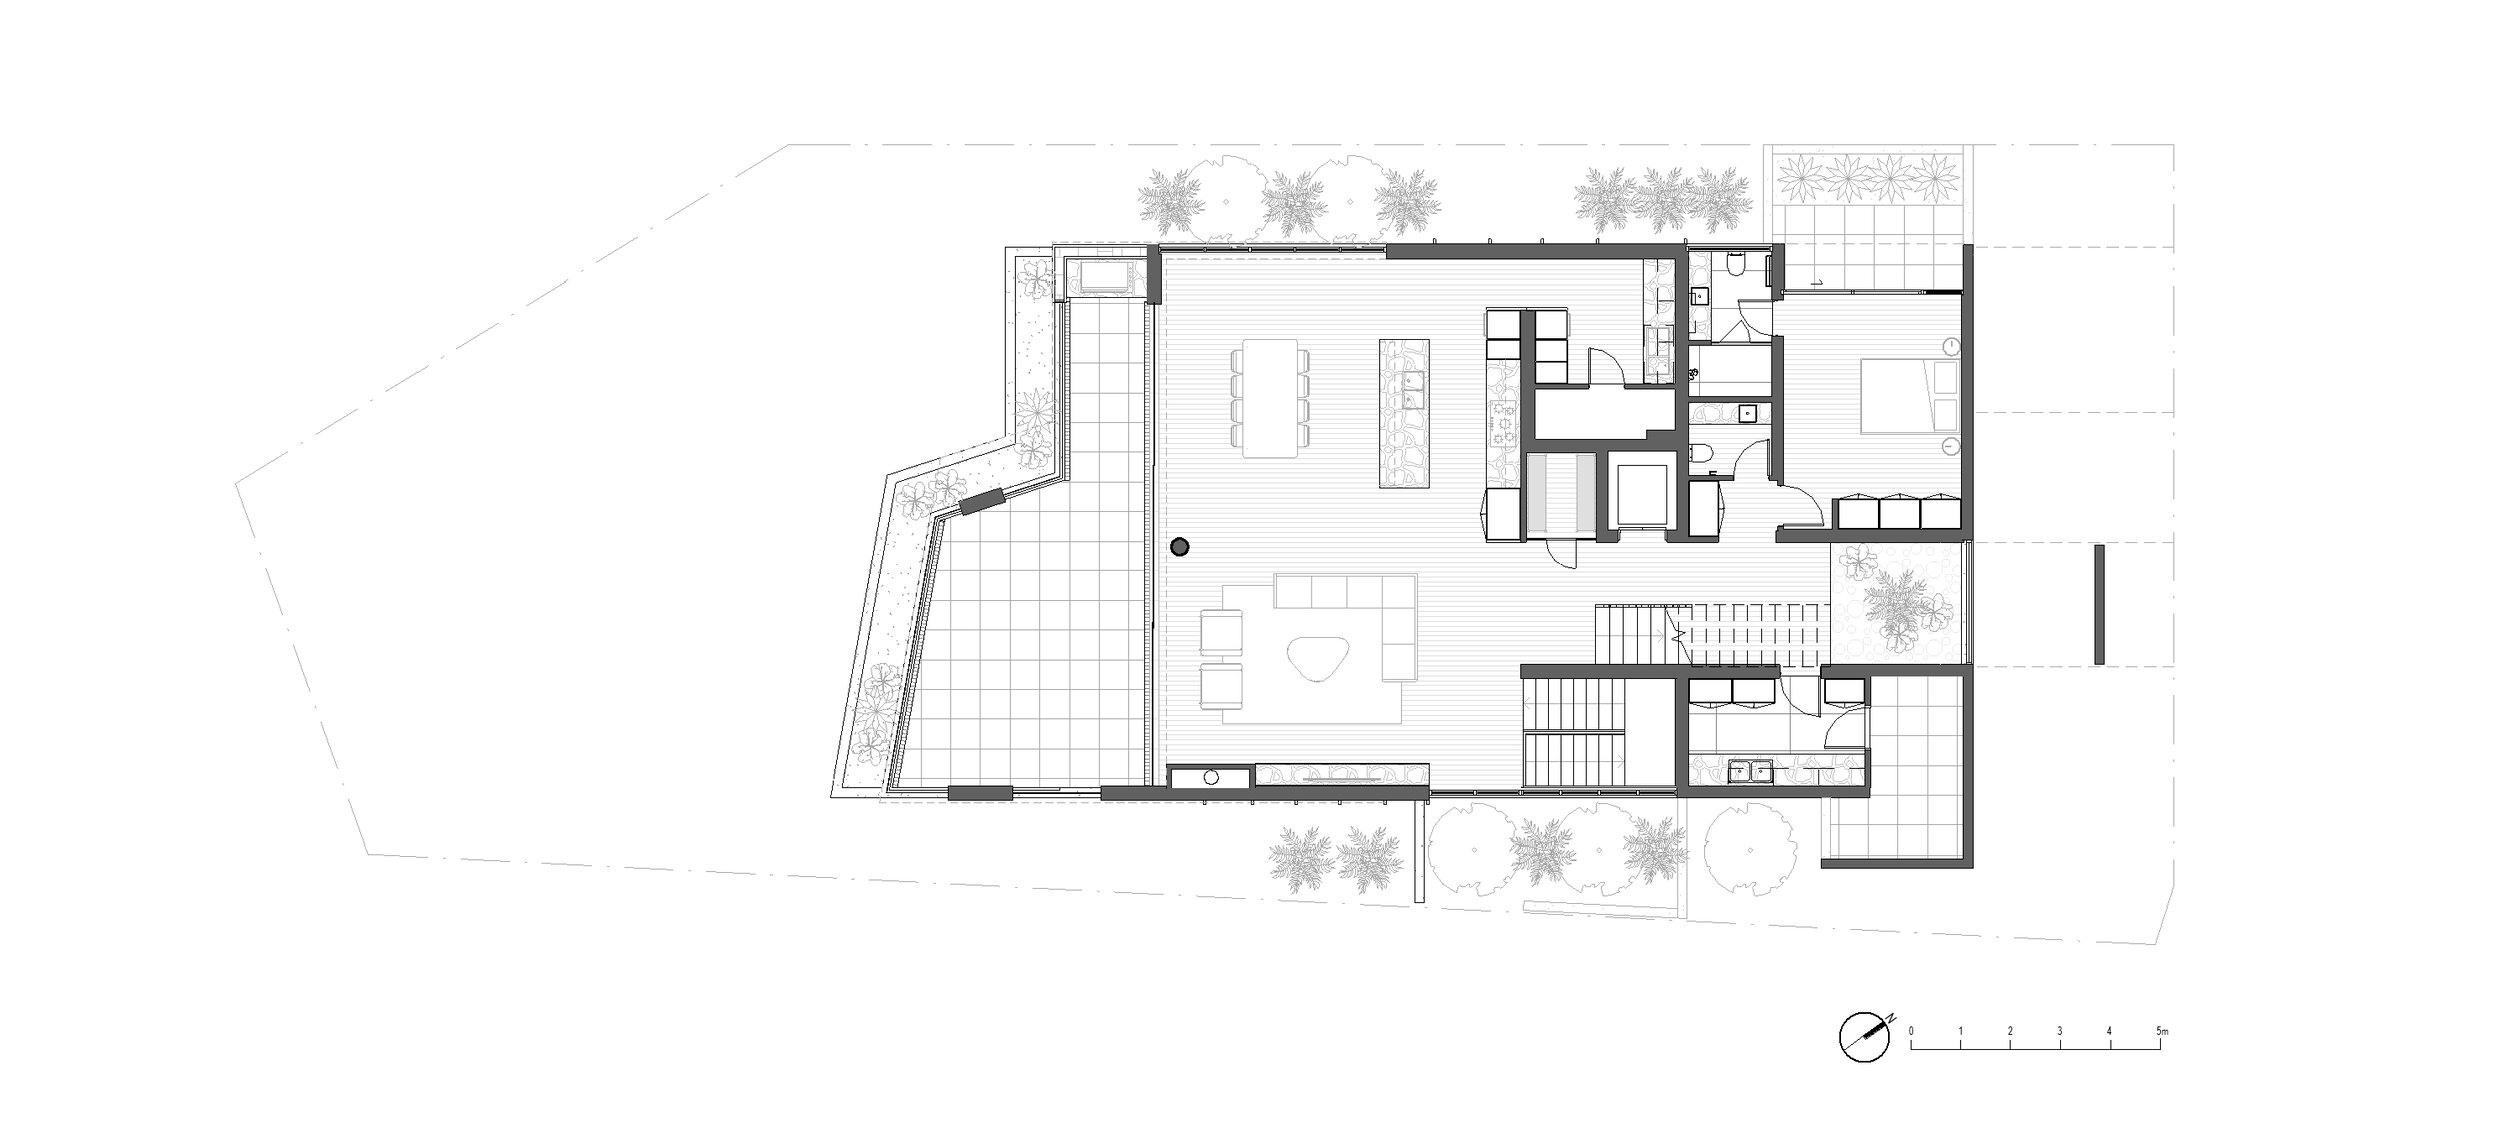 1 - Floor Plan - MARKETING - L3.jpg